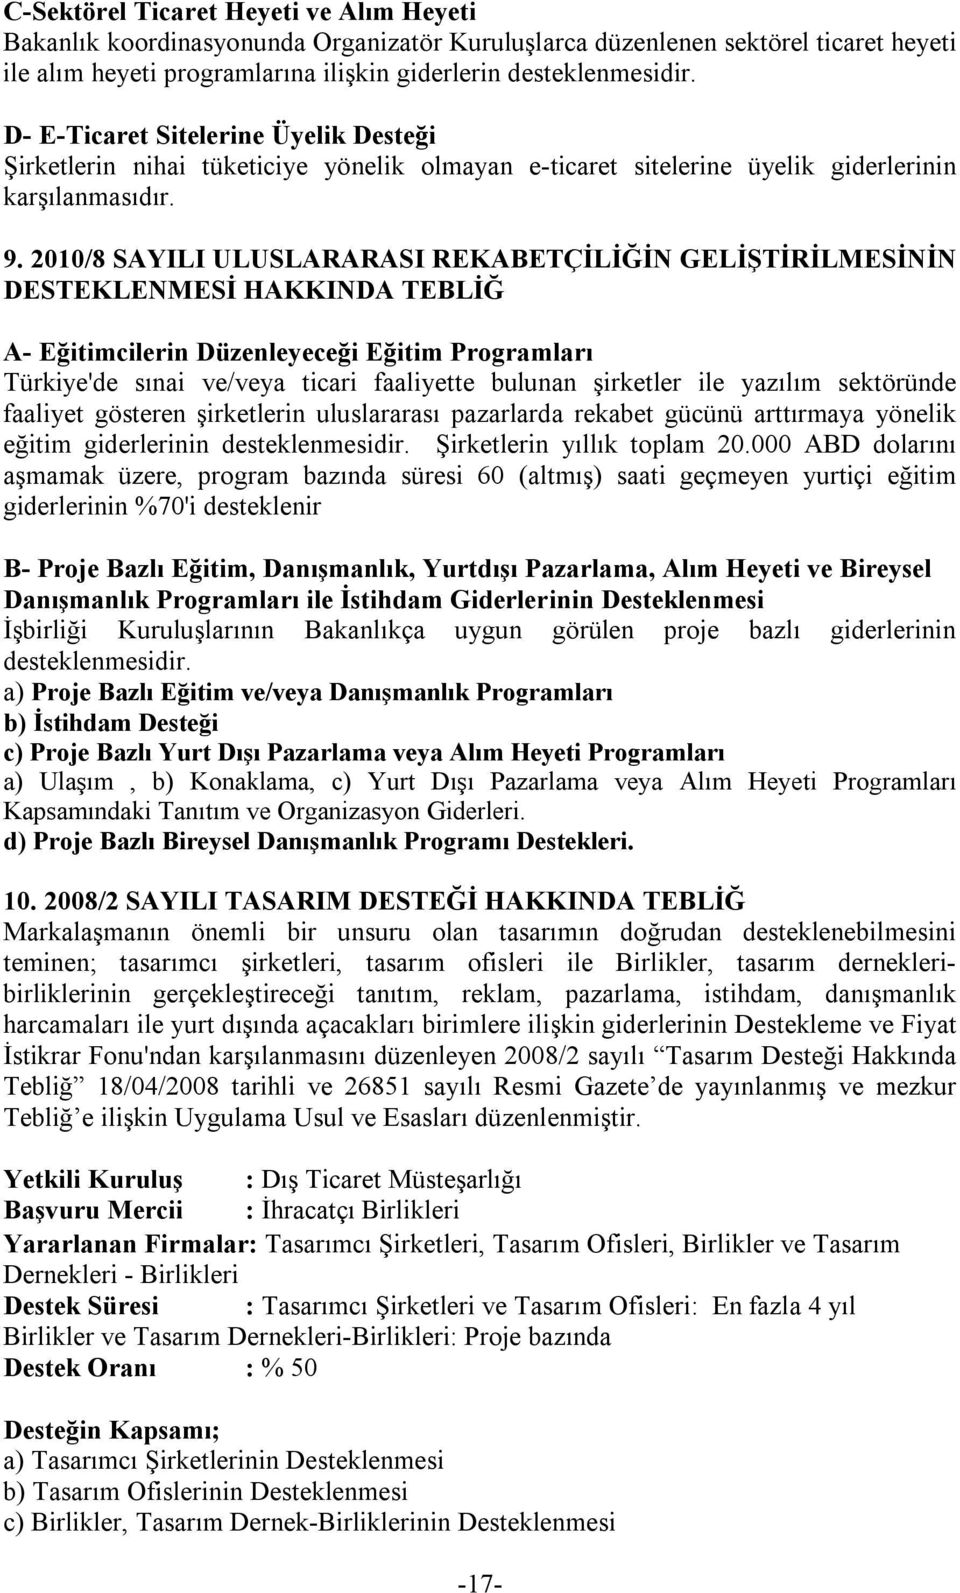 2010/8 SAYILI ULUSLARARASI REKABETÇİLİĞİN GELİŞTİRİLMESİNİN DESTEKLENMESİ HAKKINDA TEBLİĞ A- Eğitimcilerin Düzenleyeceği Eğitim Programları Türkiye'de sınai ve/veya ticari faaliyette bulunan